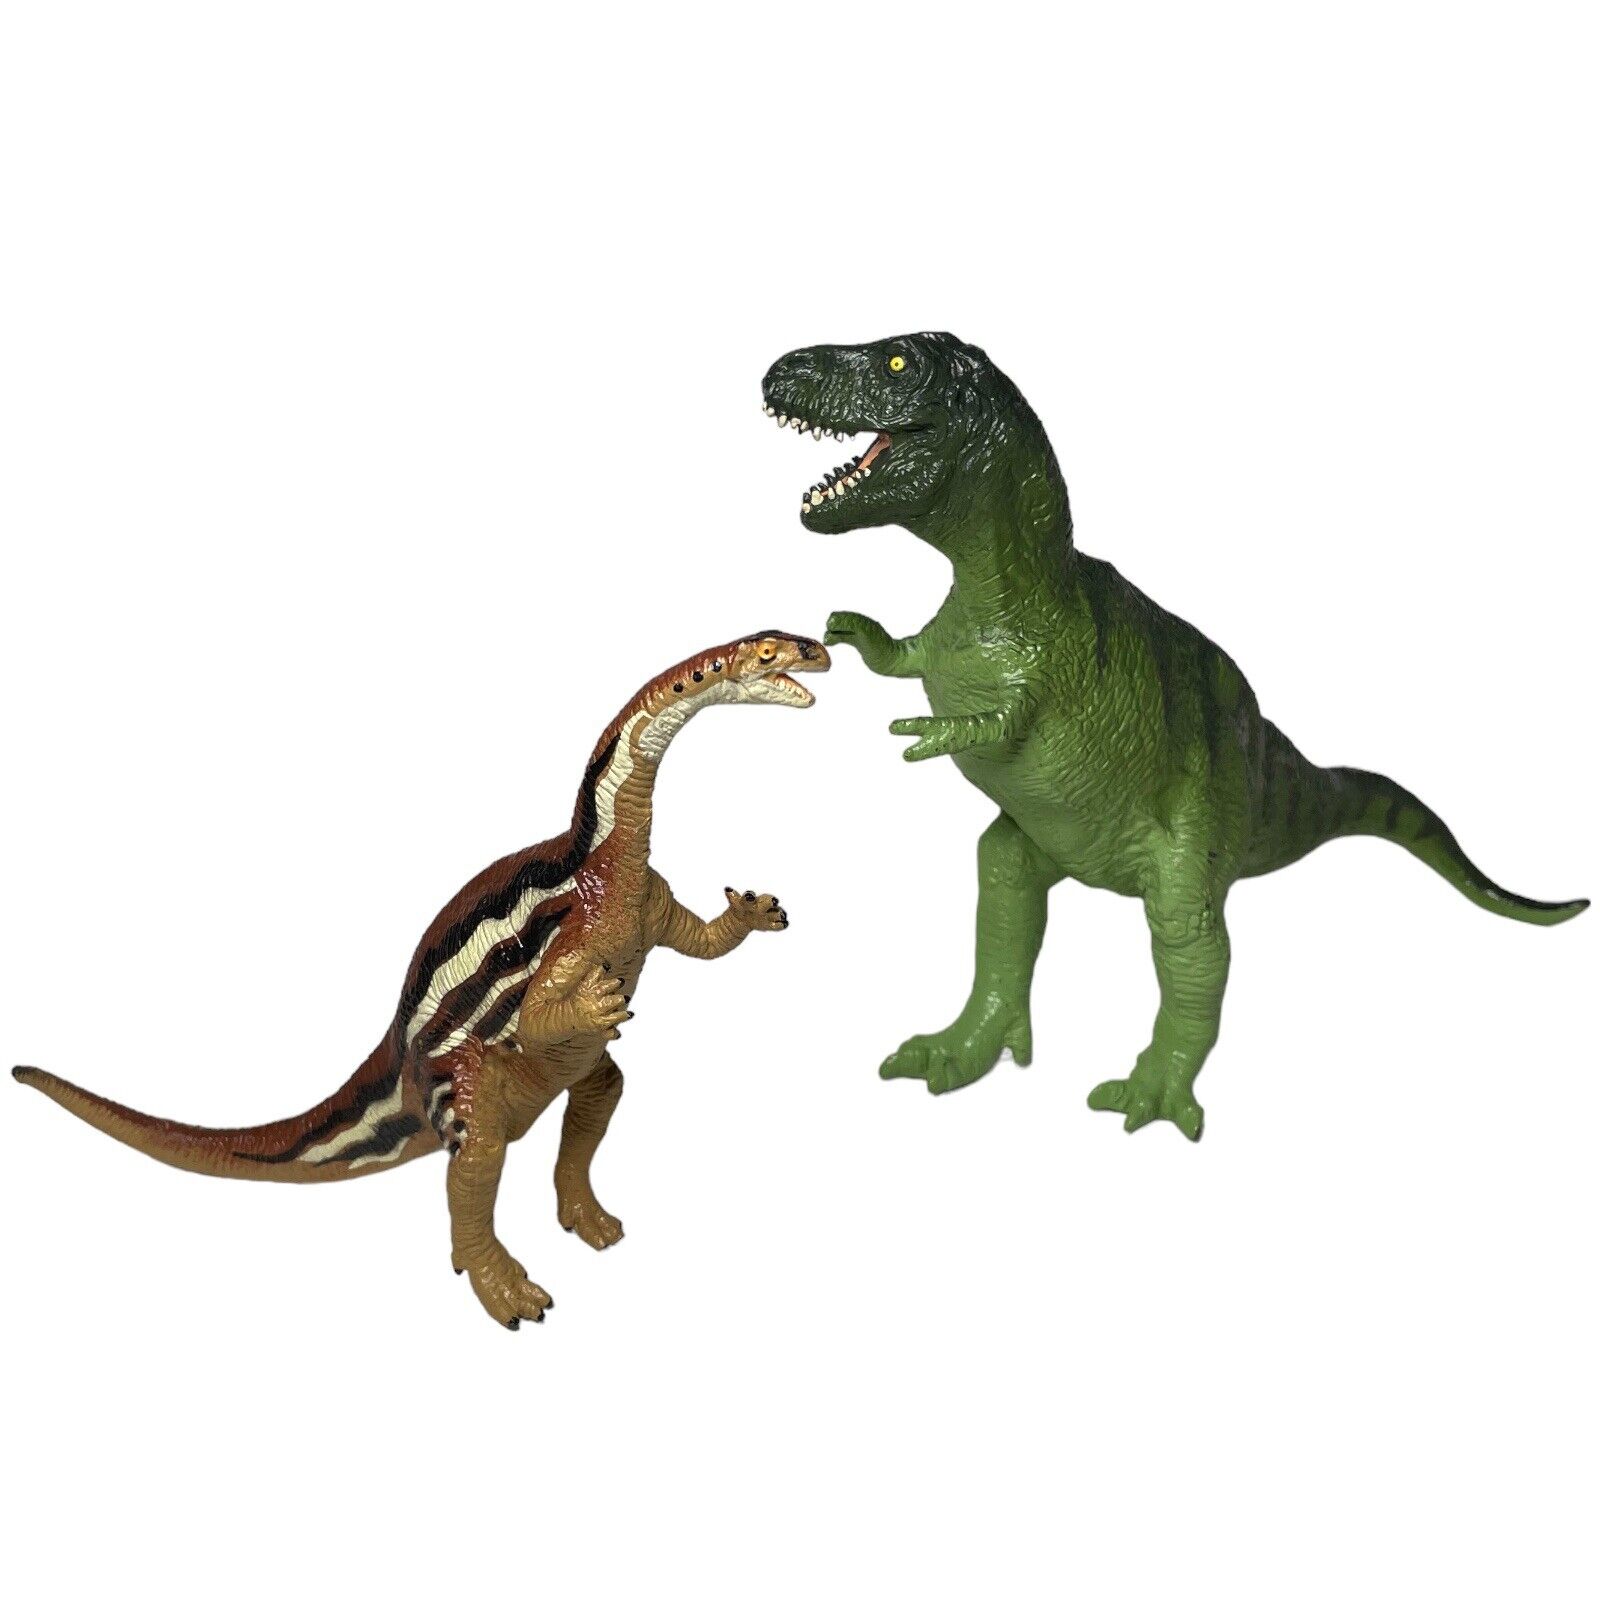 Toy Dinosaur Figures Vintage Carnegie Safari LTD. 1988 T-Rex, 1994 Plateosaurus